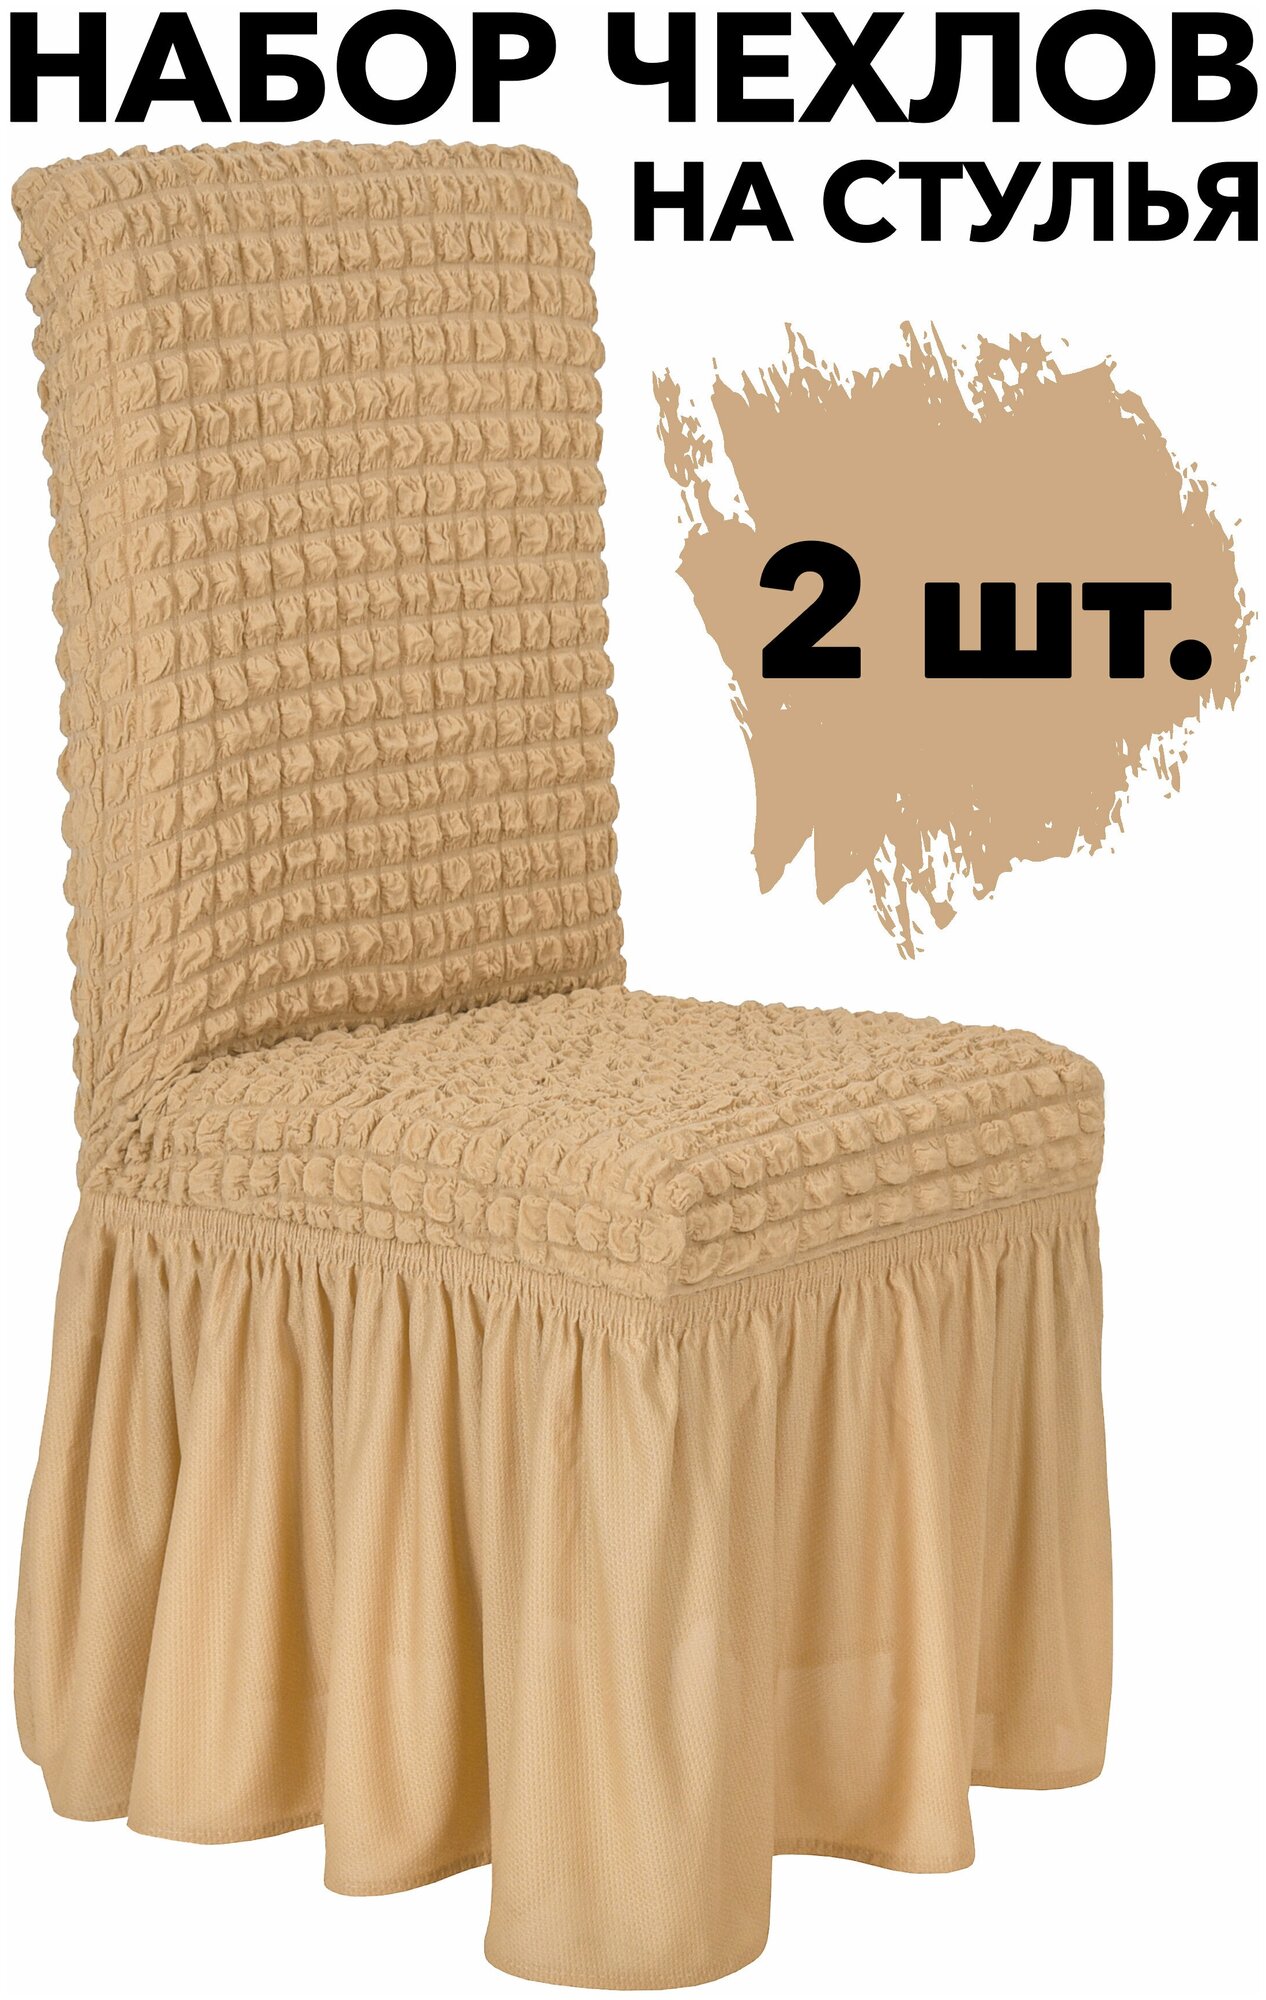 Чехол на стул со спинкой 2 шт набор универсальный с юбкой Venera, цвет Медовый